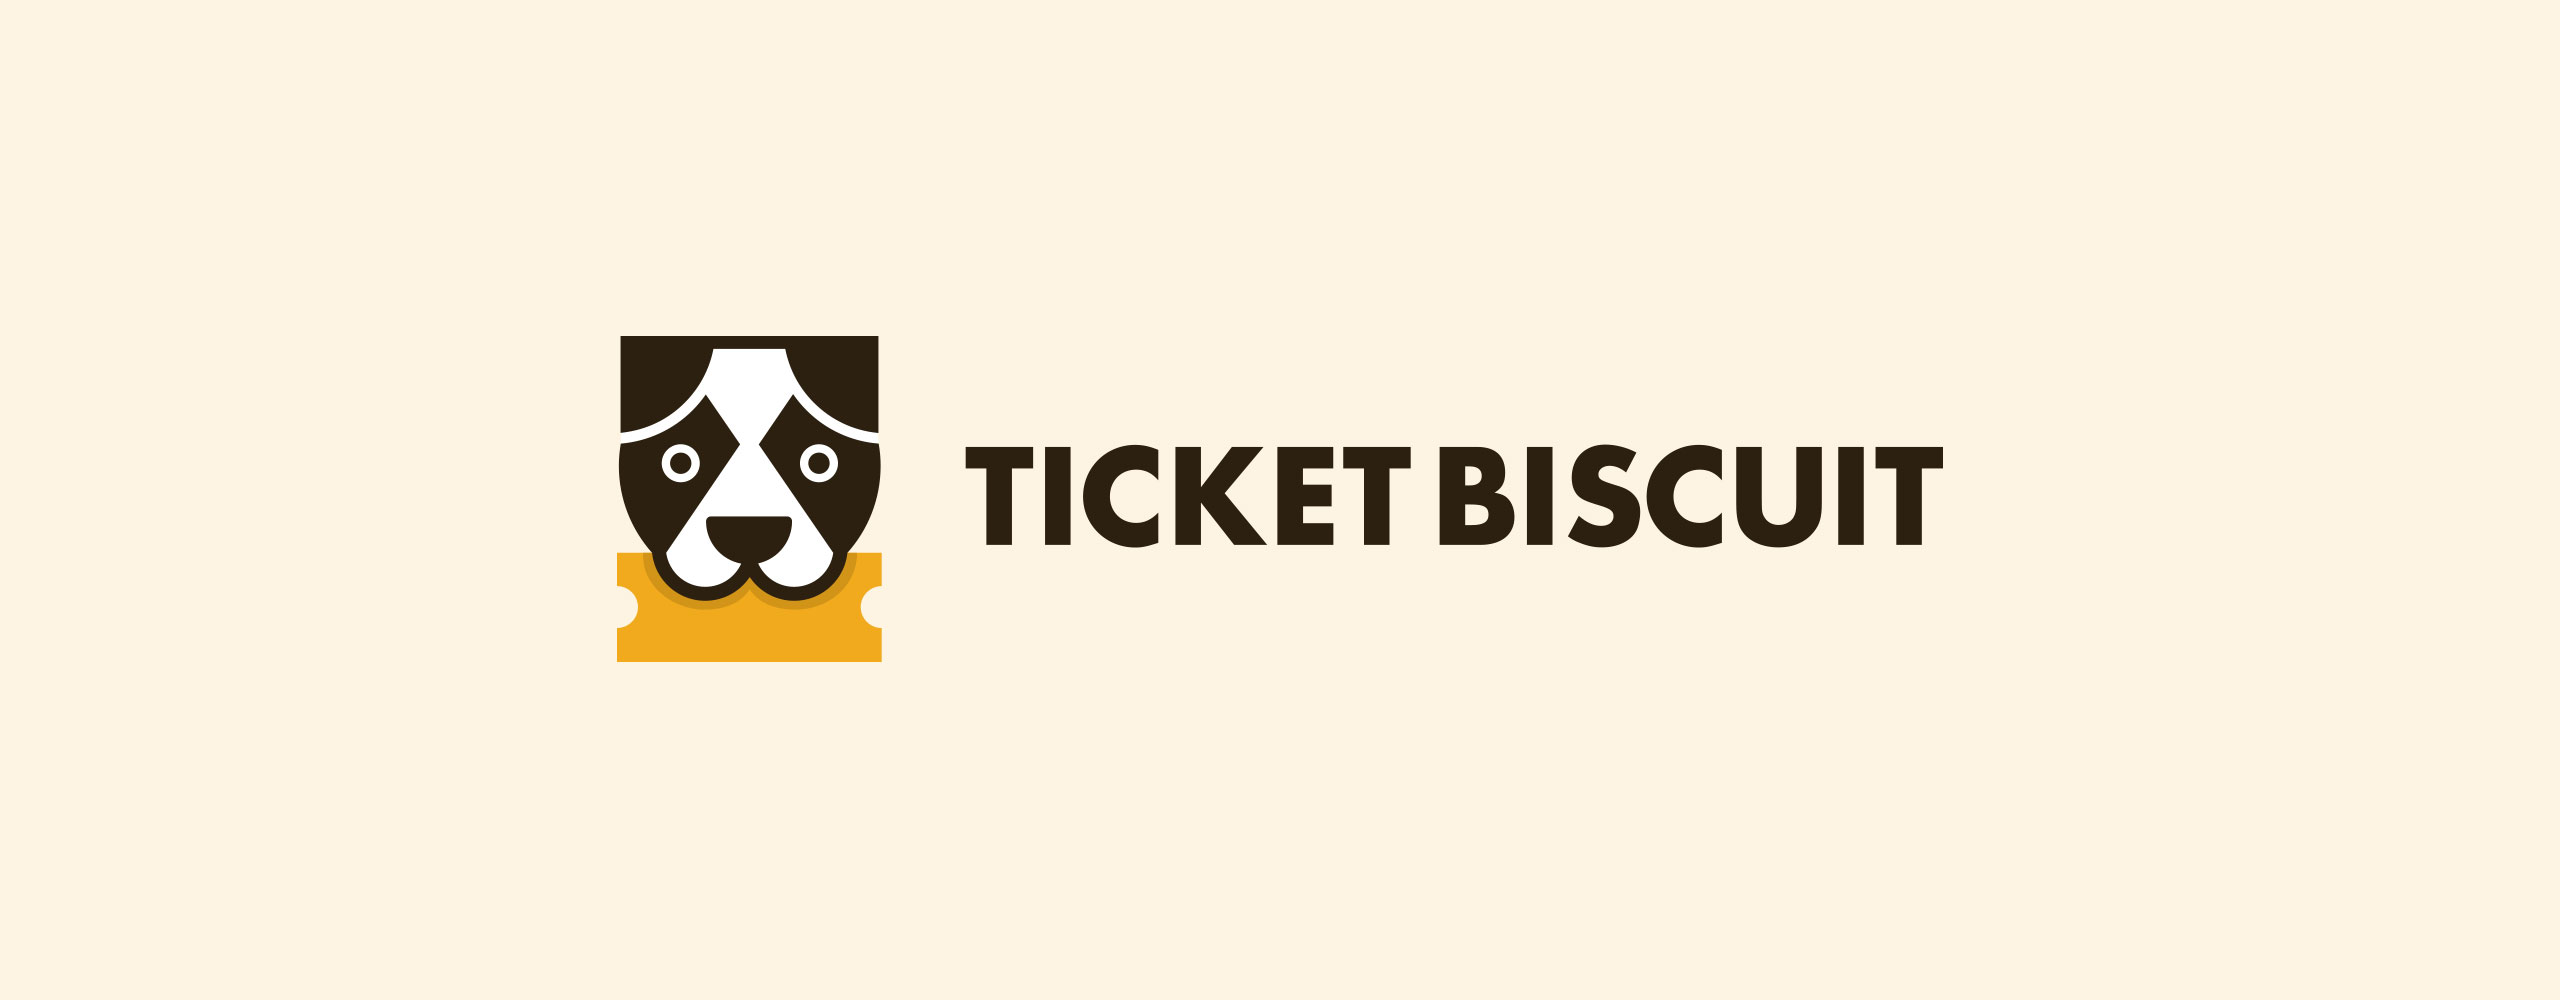 ticketbiscuit-logo